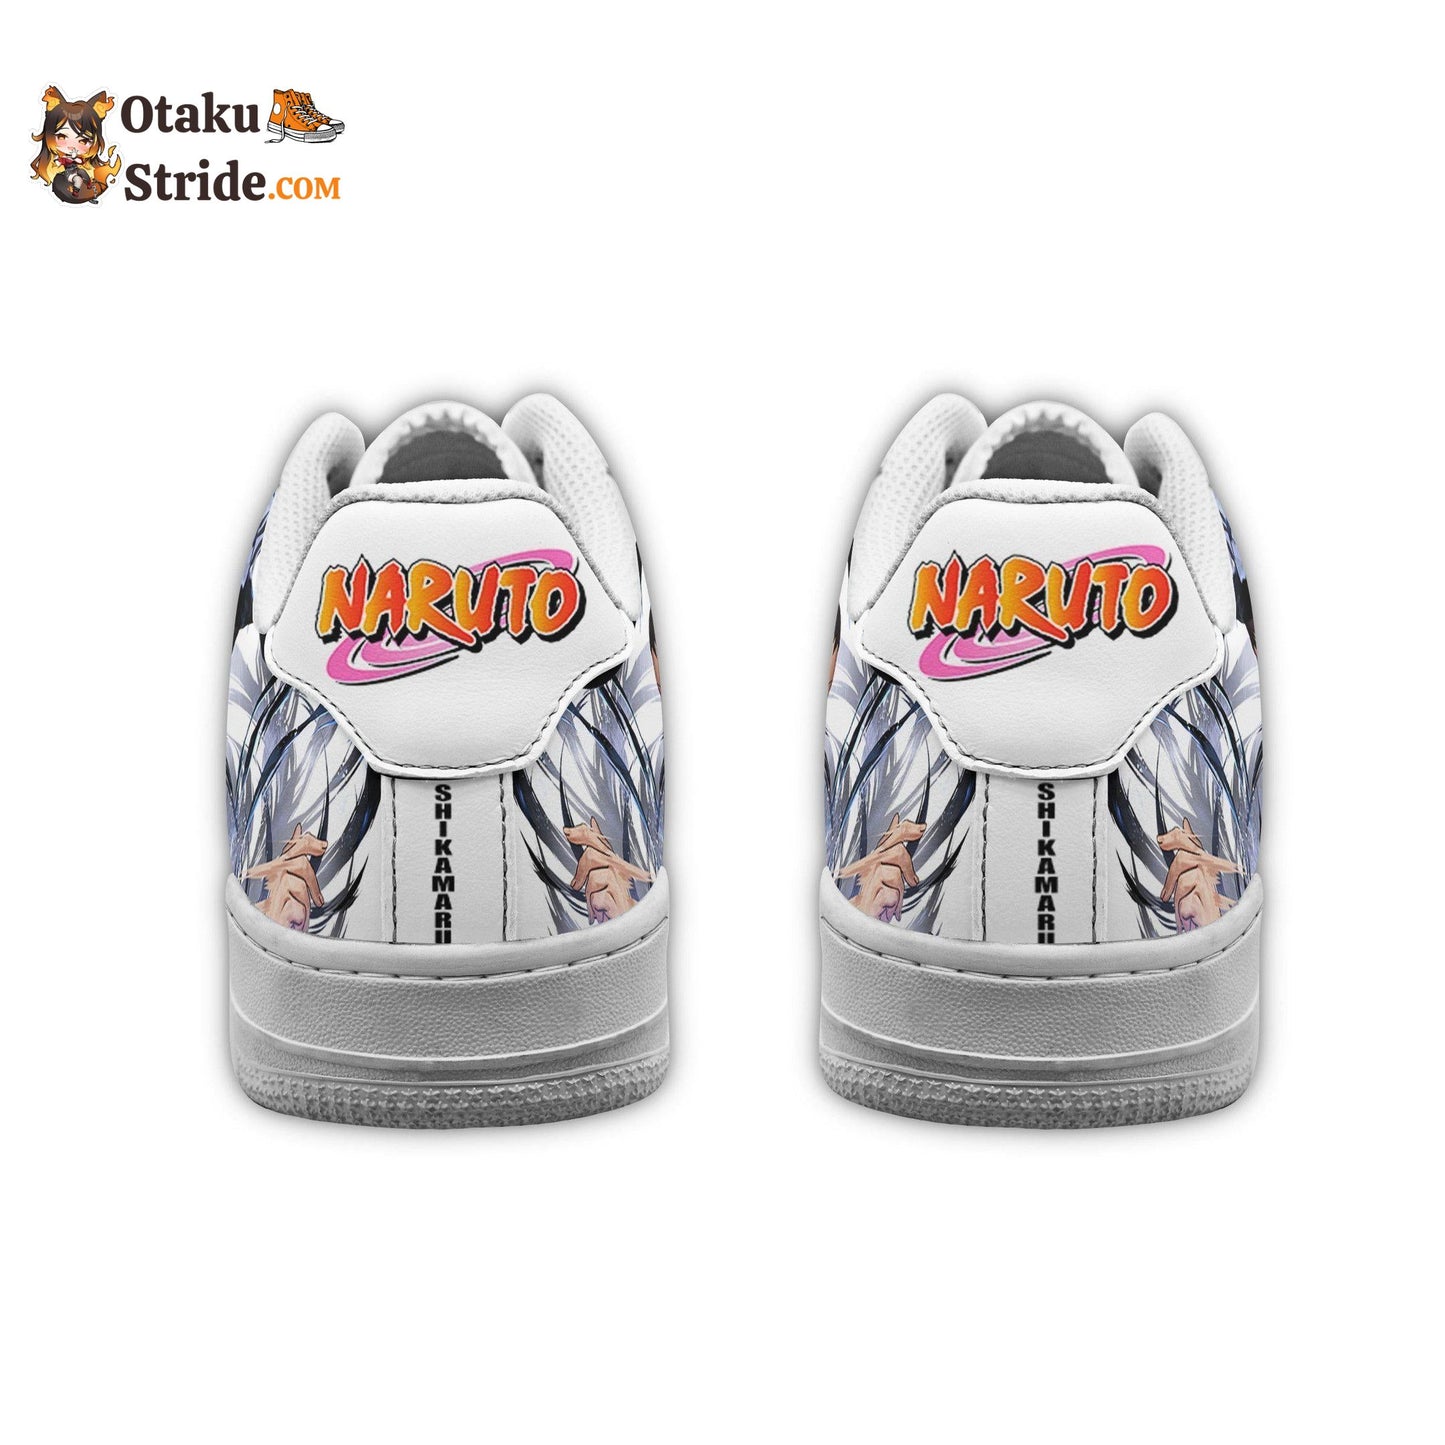 Shikamaru Air Shoes from Naruto Series